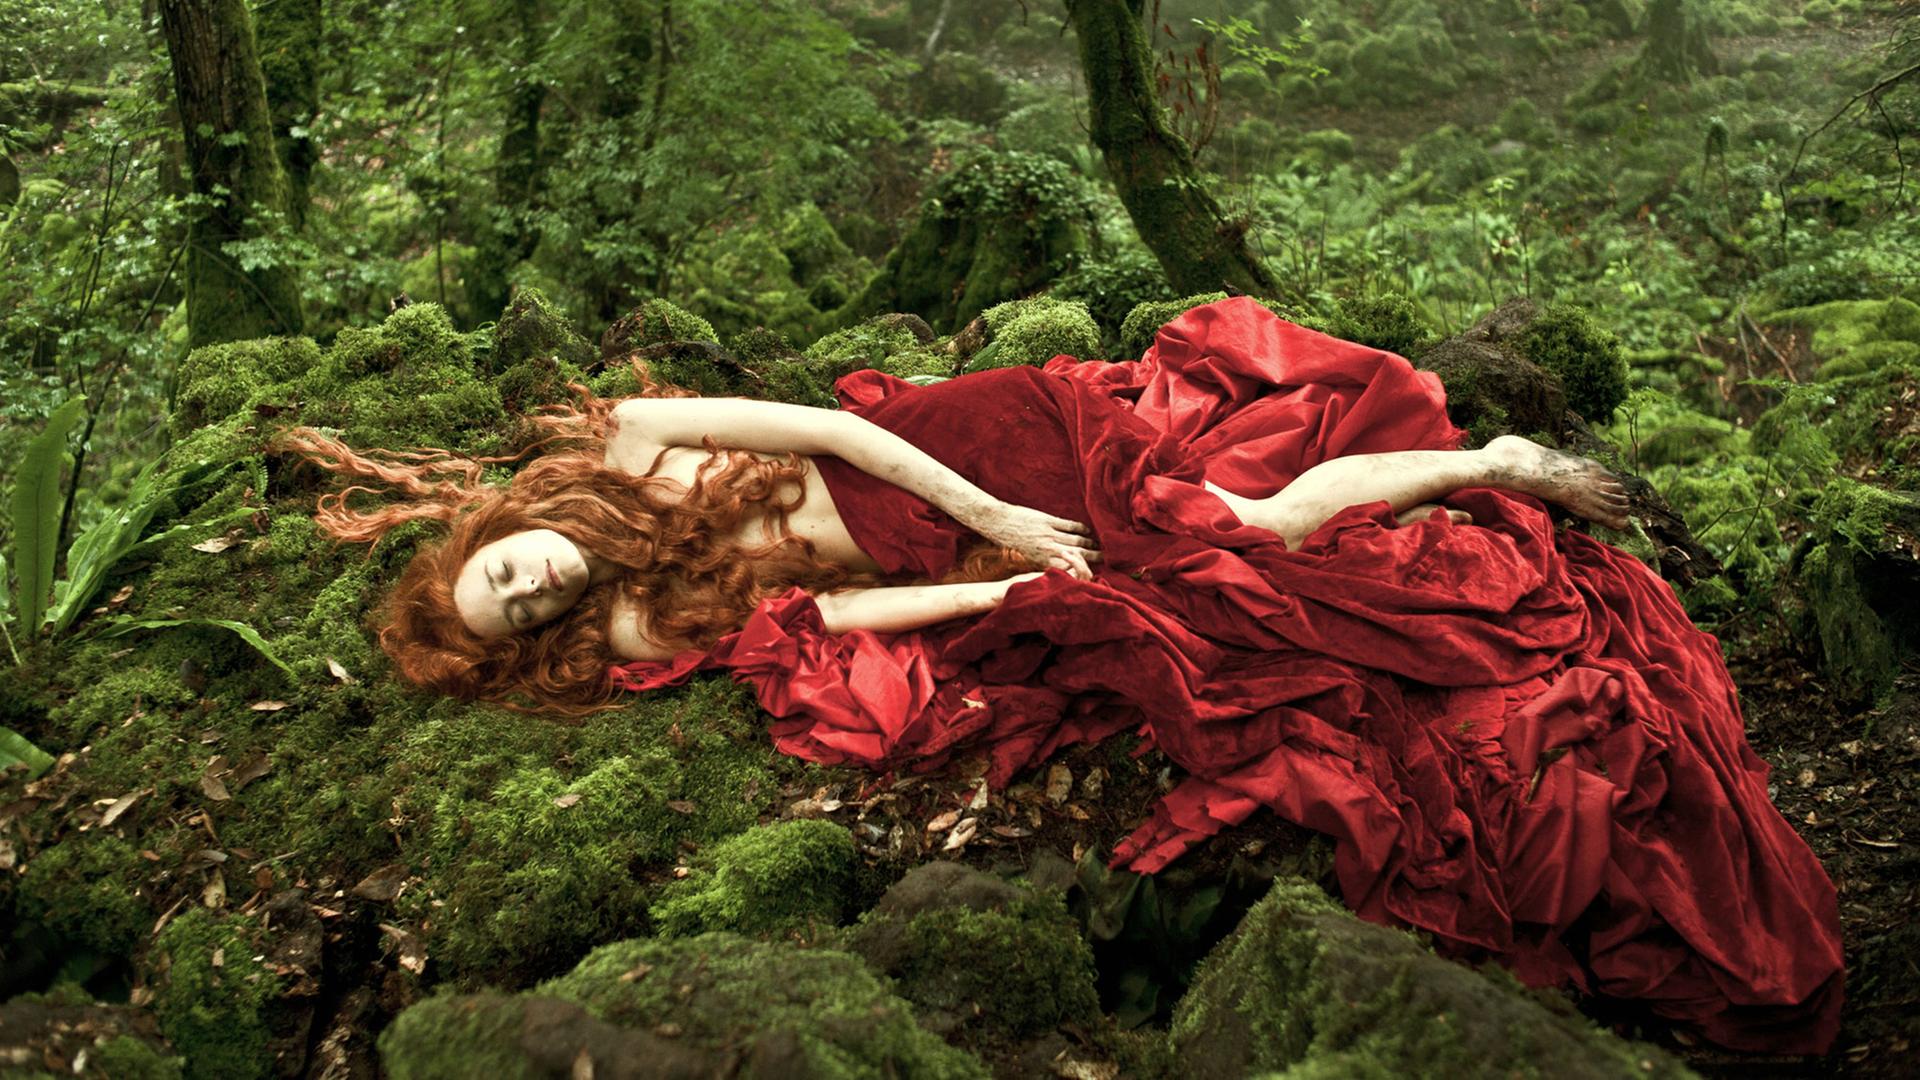 Stacey Martin liegt in roten Stoff eingehüllt auf einer Moosfläche in einem Wald.